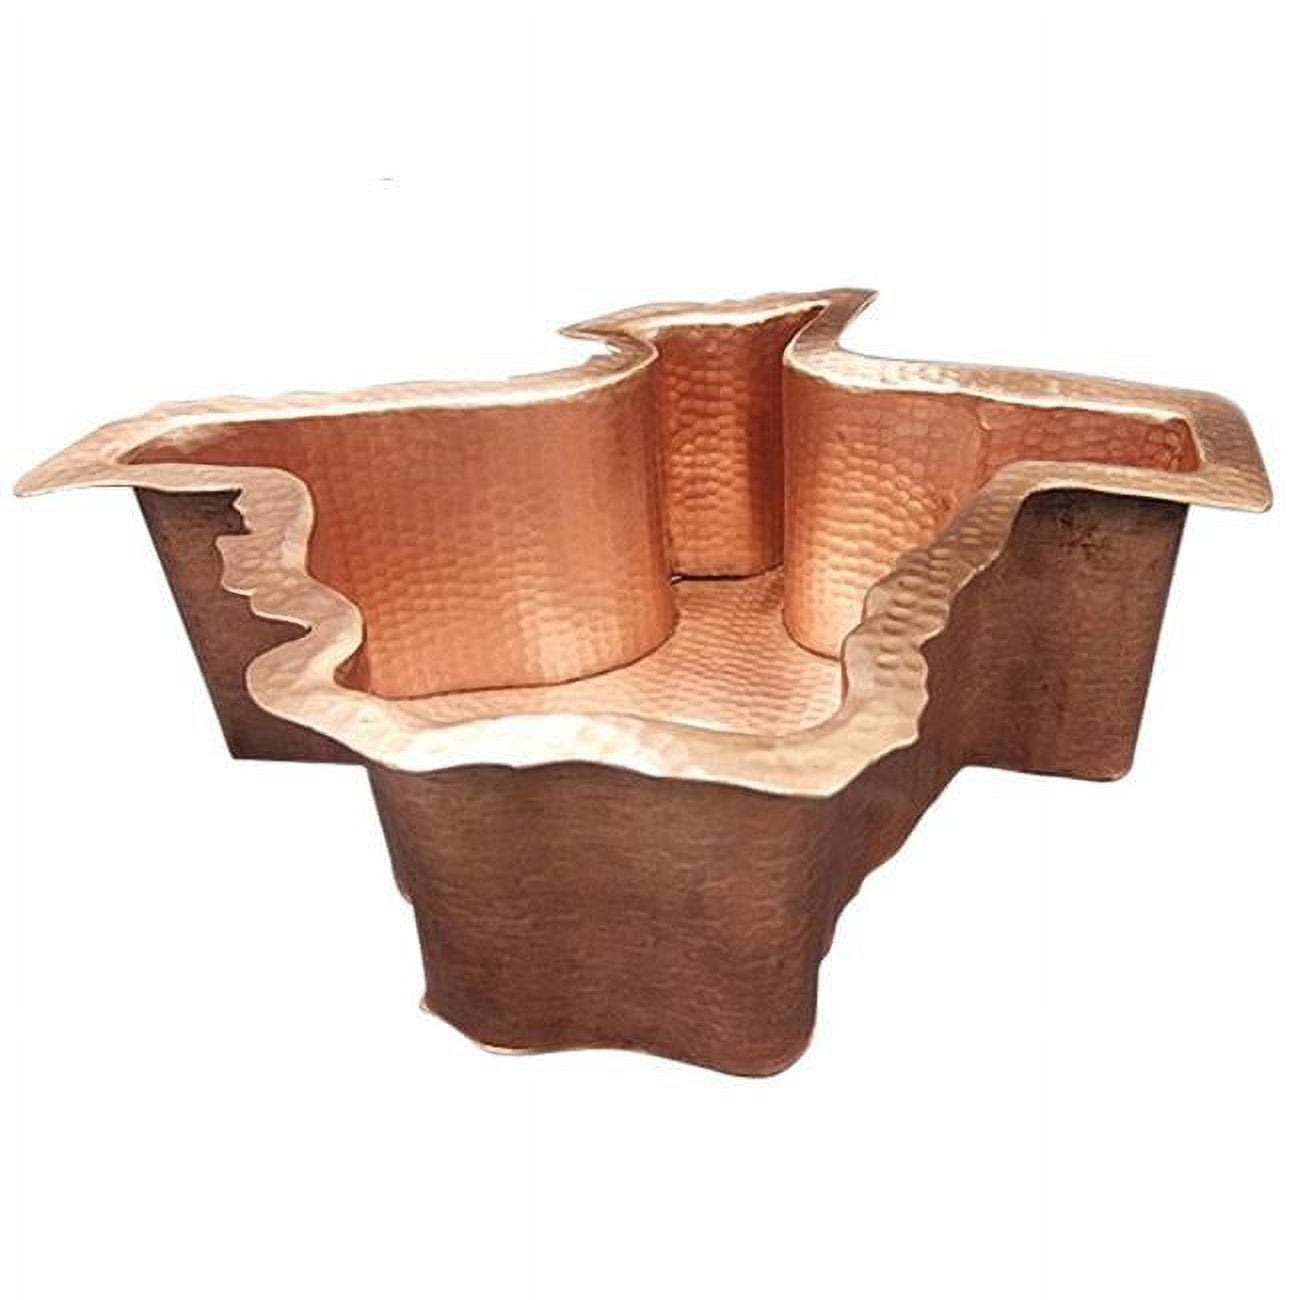 Cbs-tx-17-ma Copper Bar Sink, Matte - Texas Design - 6 X 16.5 X 17 In.